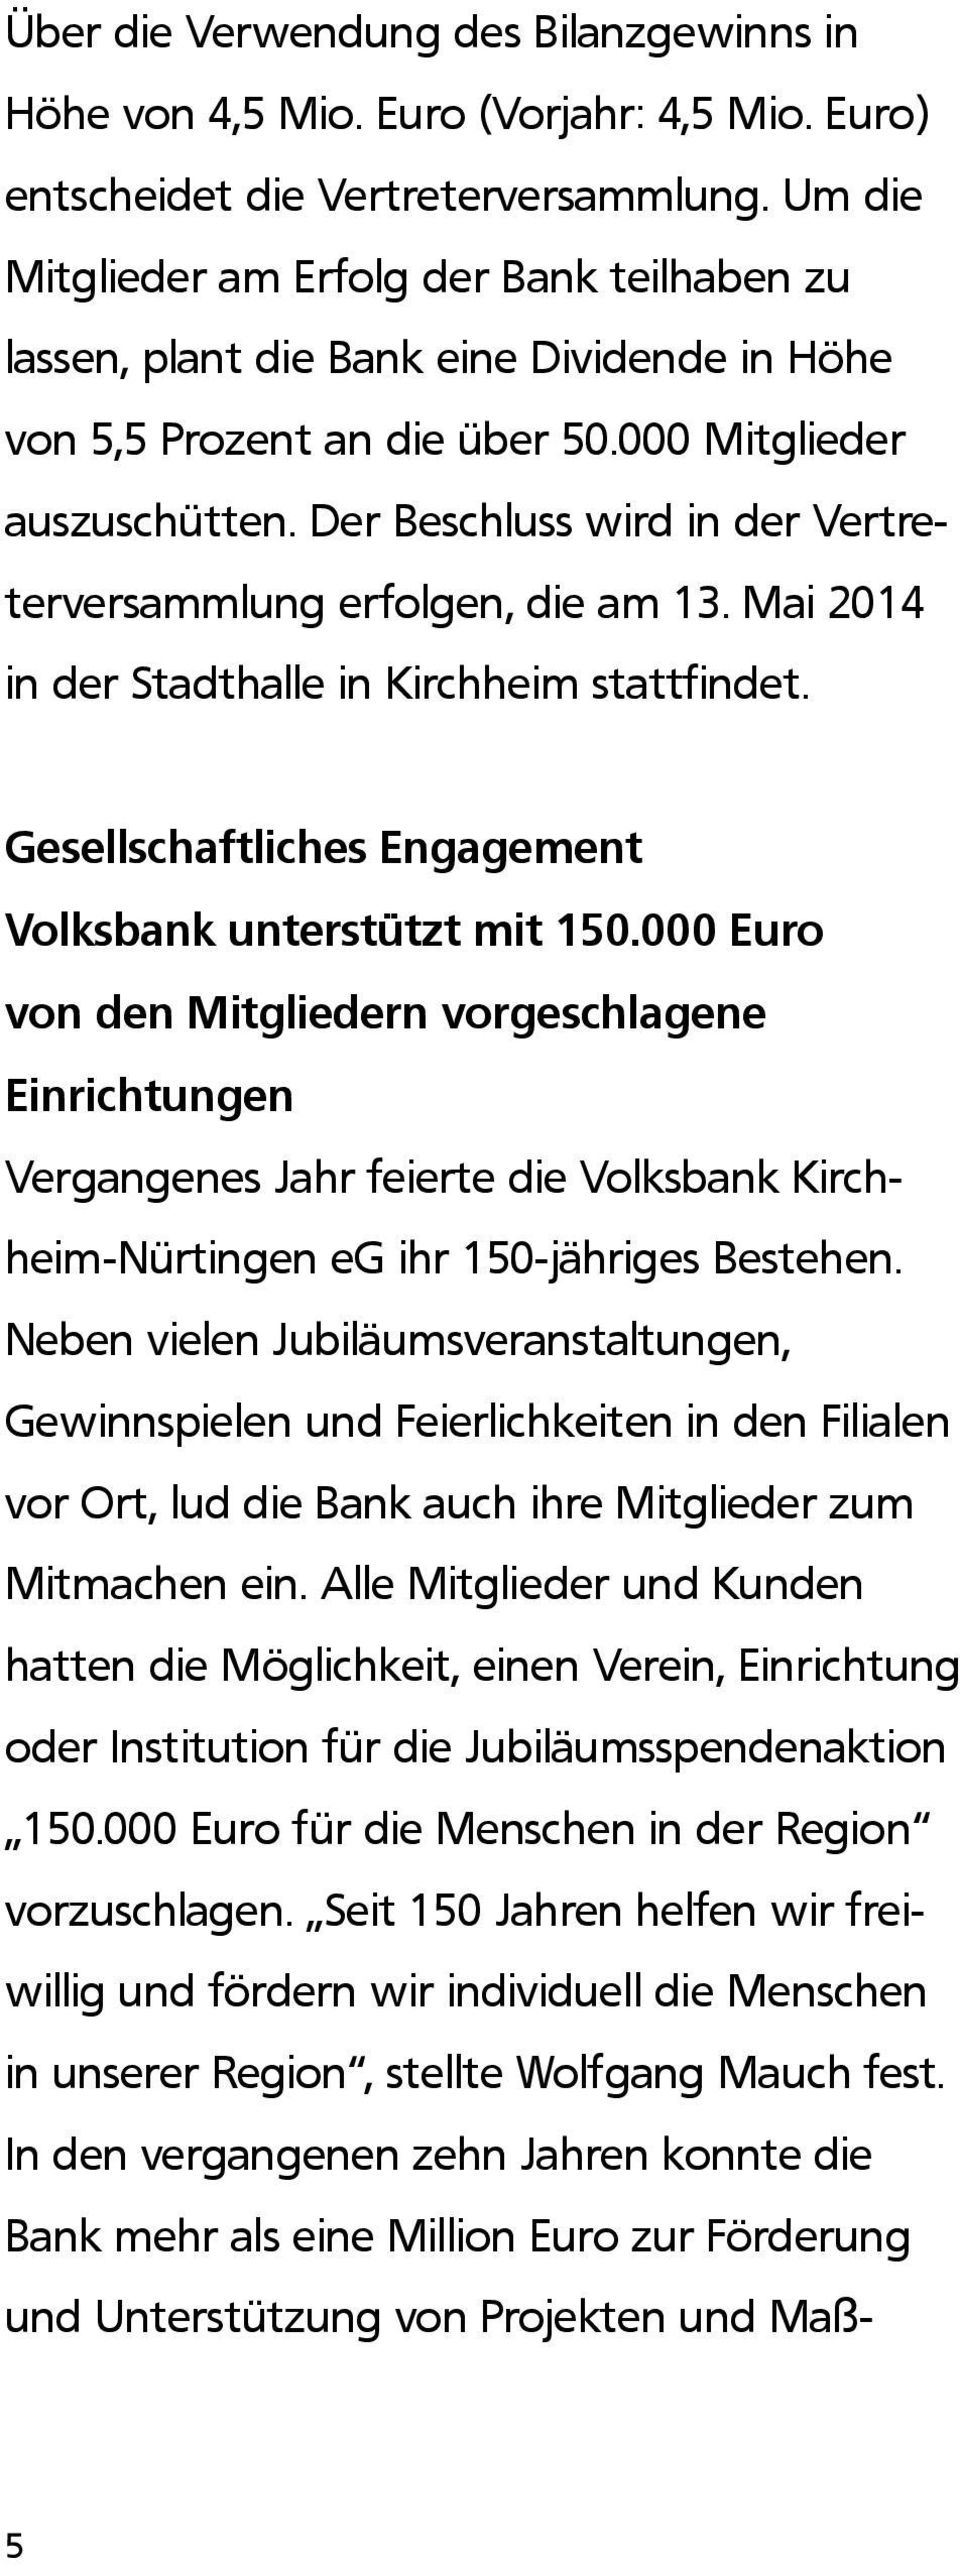 Der Beschluss wird in der Vertreterversammlung erfolgen, die am 13. Mai 2014 in der Stadthalle in Kirchheim stattfindet. Gesellschaftliches Engagement Volksbank unterstützt mit 150.